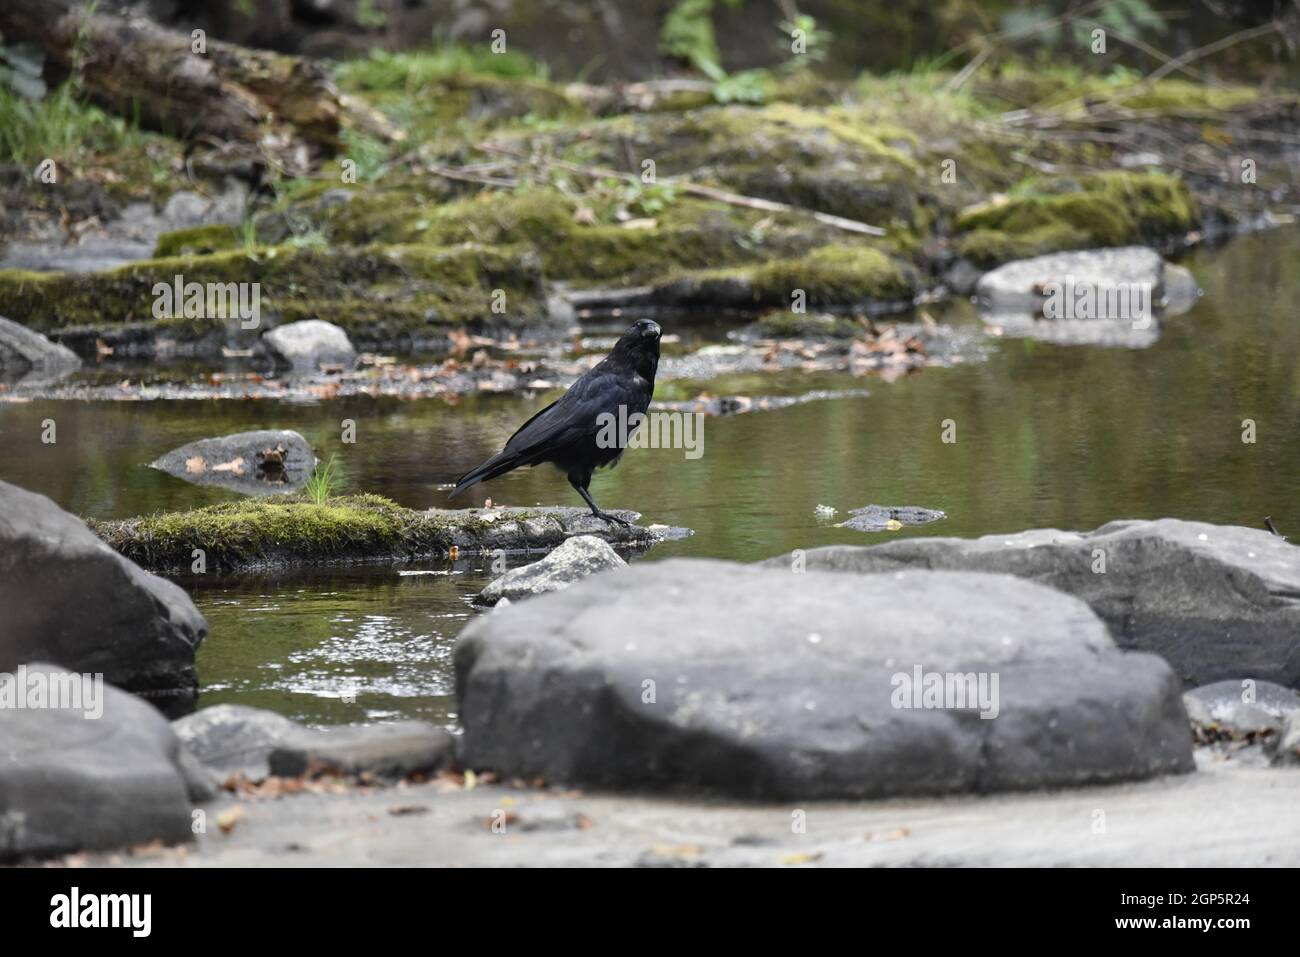 Rechtes Profilbild eines nördlichen Raben (Corvus corax), der in einem seichten Fluss steht, mit Kopf zur Seite geneigt und am späten Nachmittag der Kamera zugewandt Stockfoto